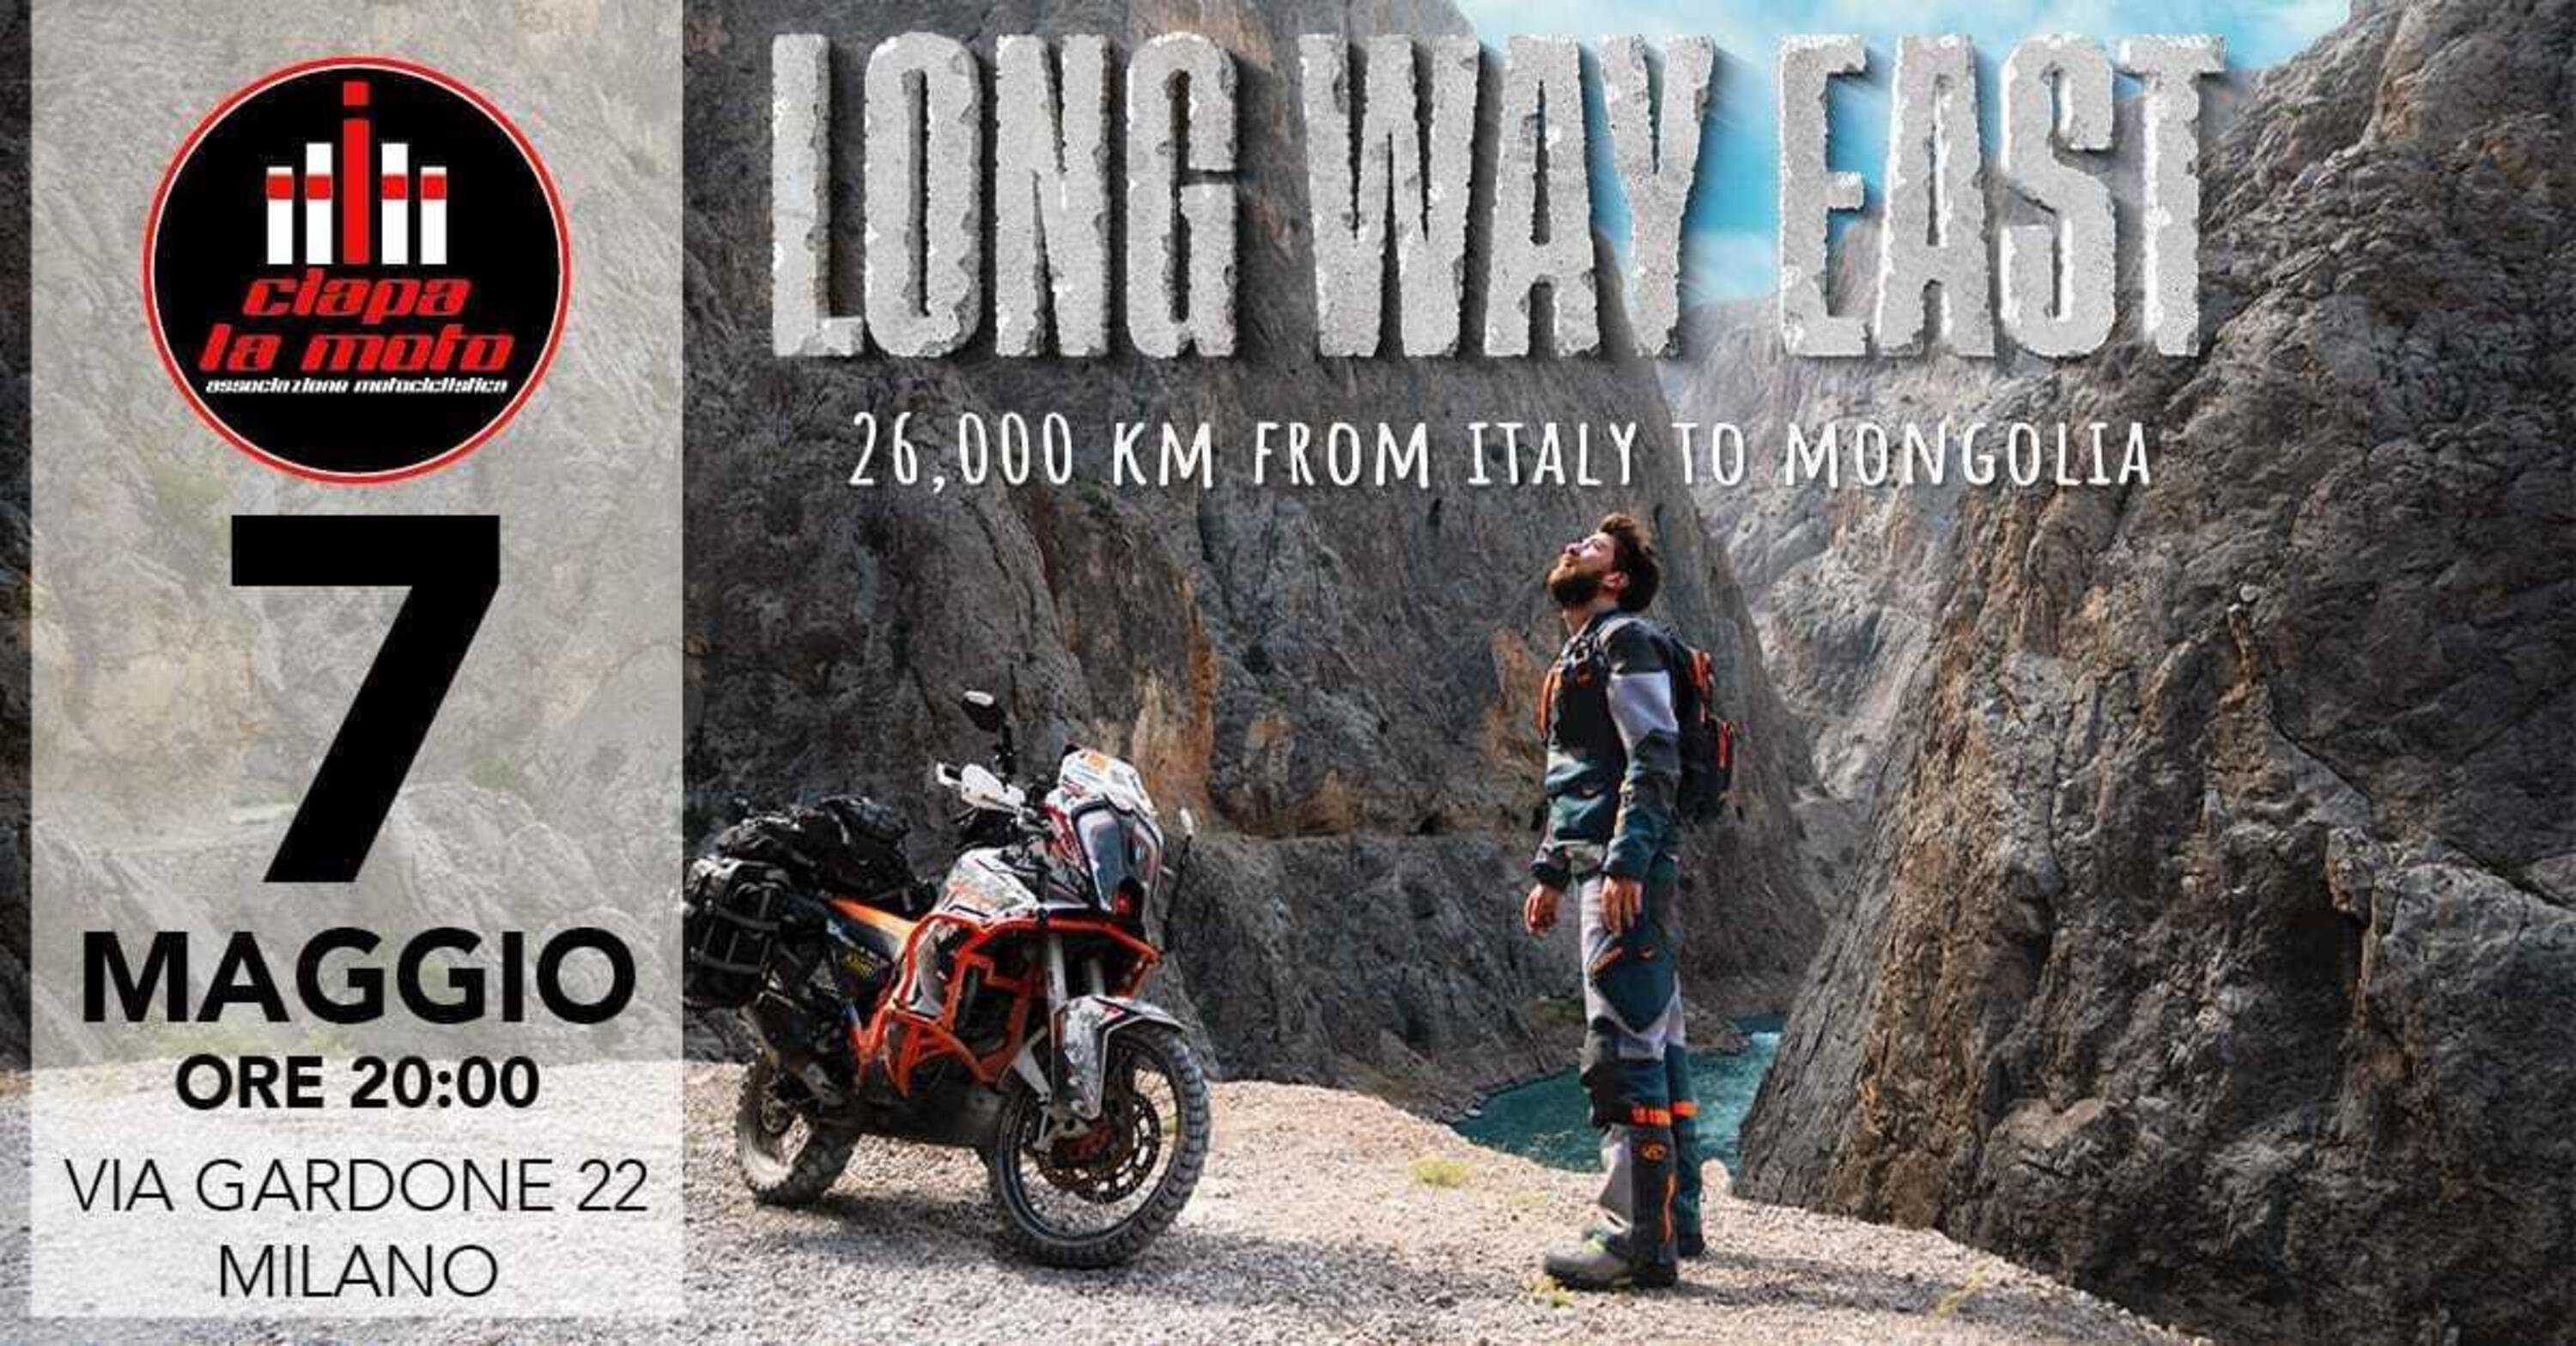 Long Way East: i racconti di viaggio di Federico Marretta al Ciapa La Moto il 7 maggio